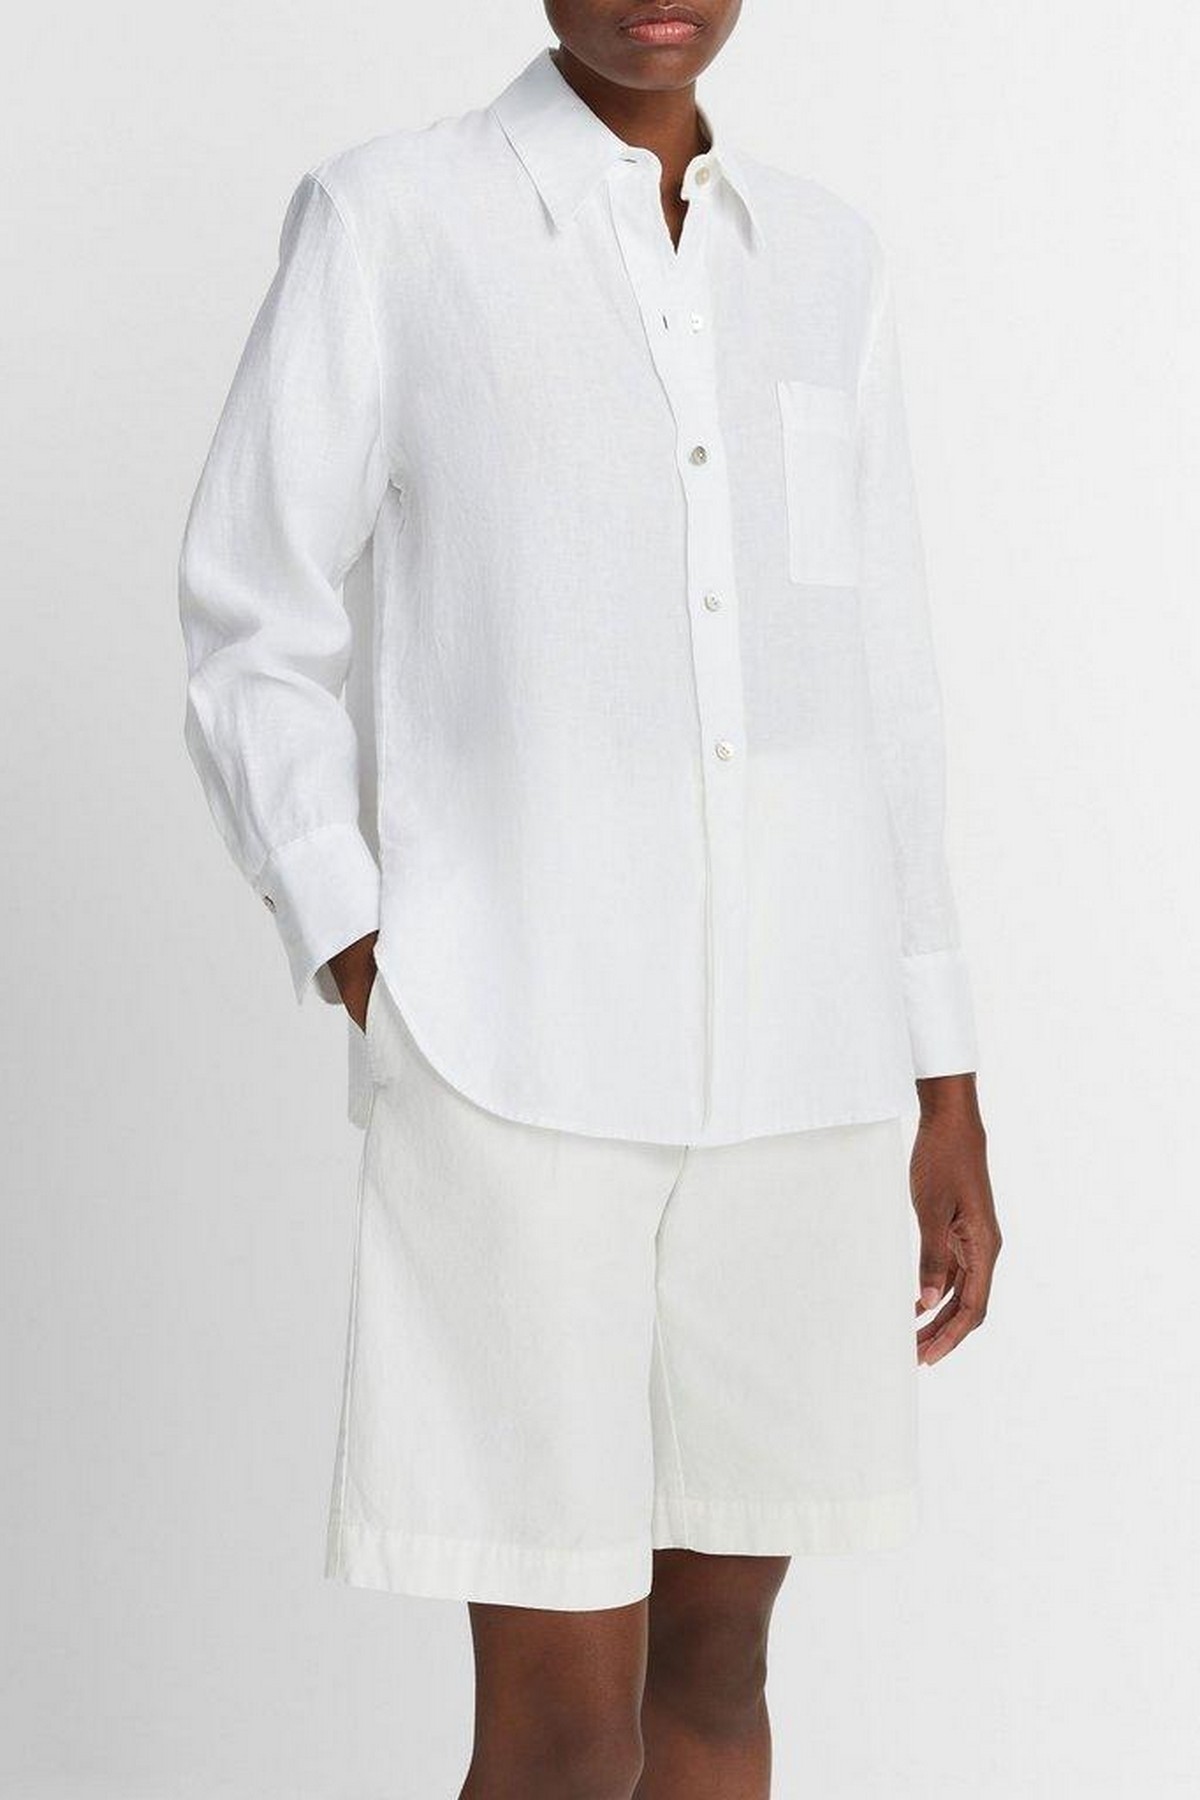 Hemdbloes linnen button down in de kleur optic white van het merk Vince